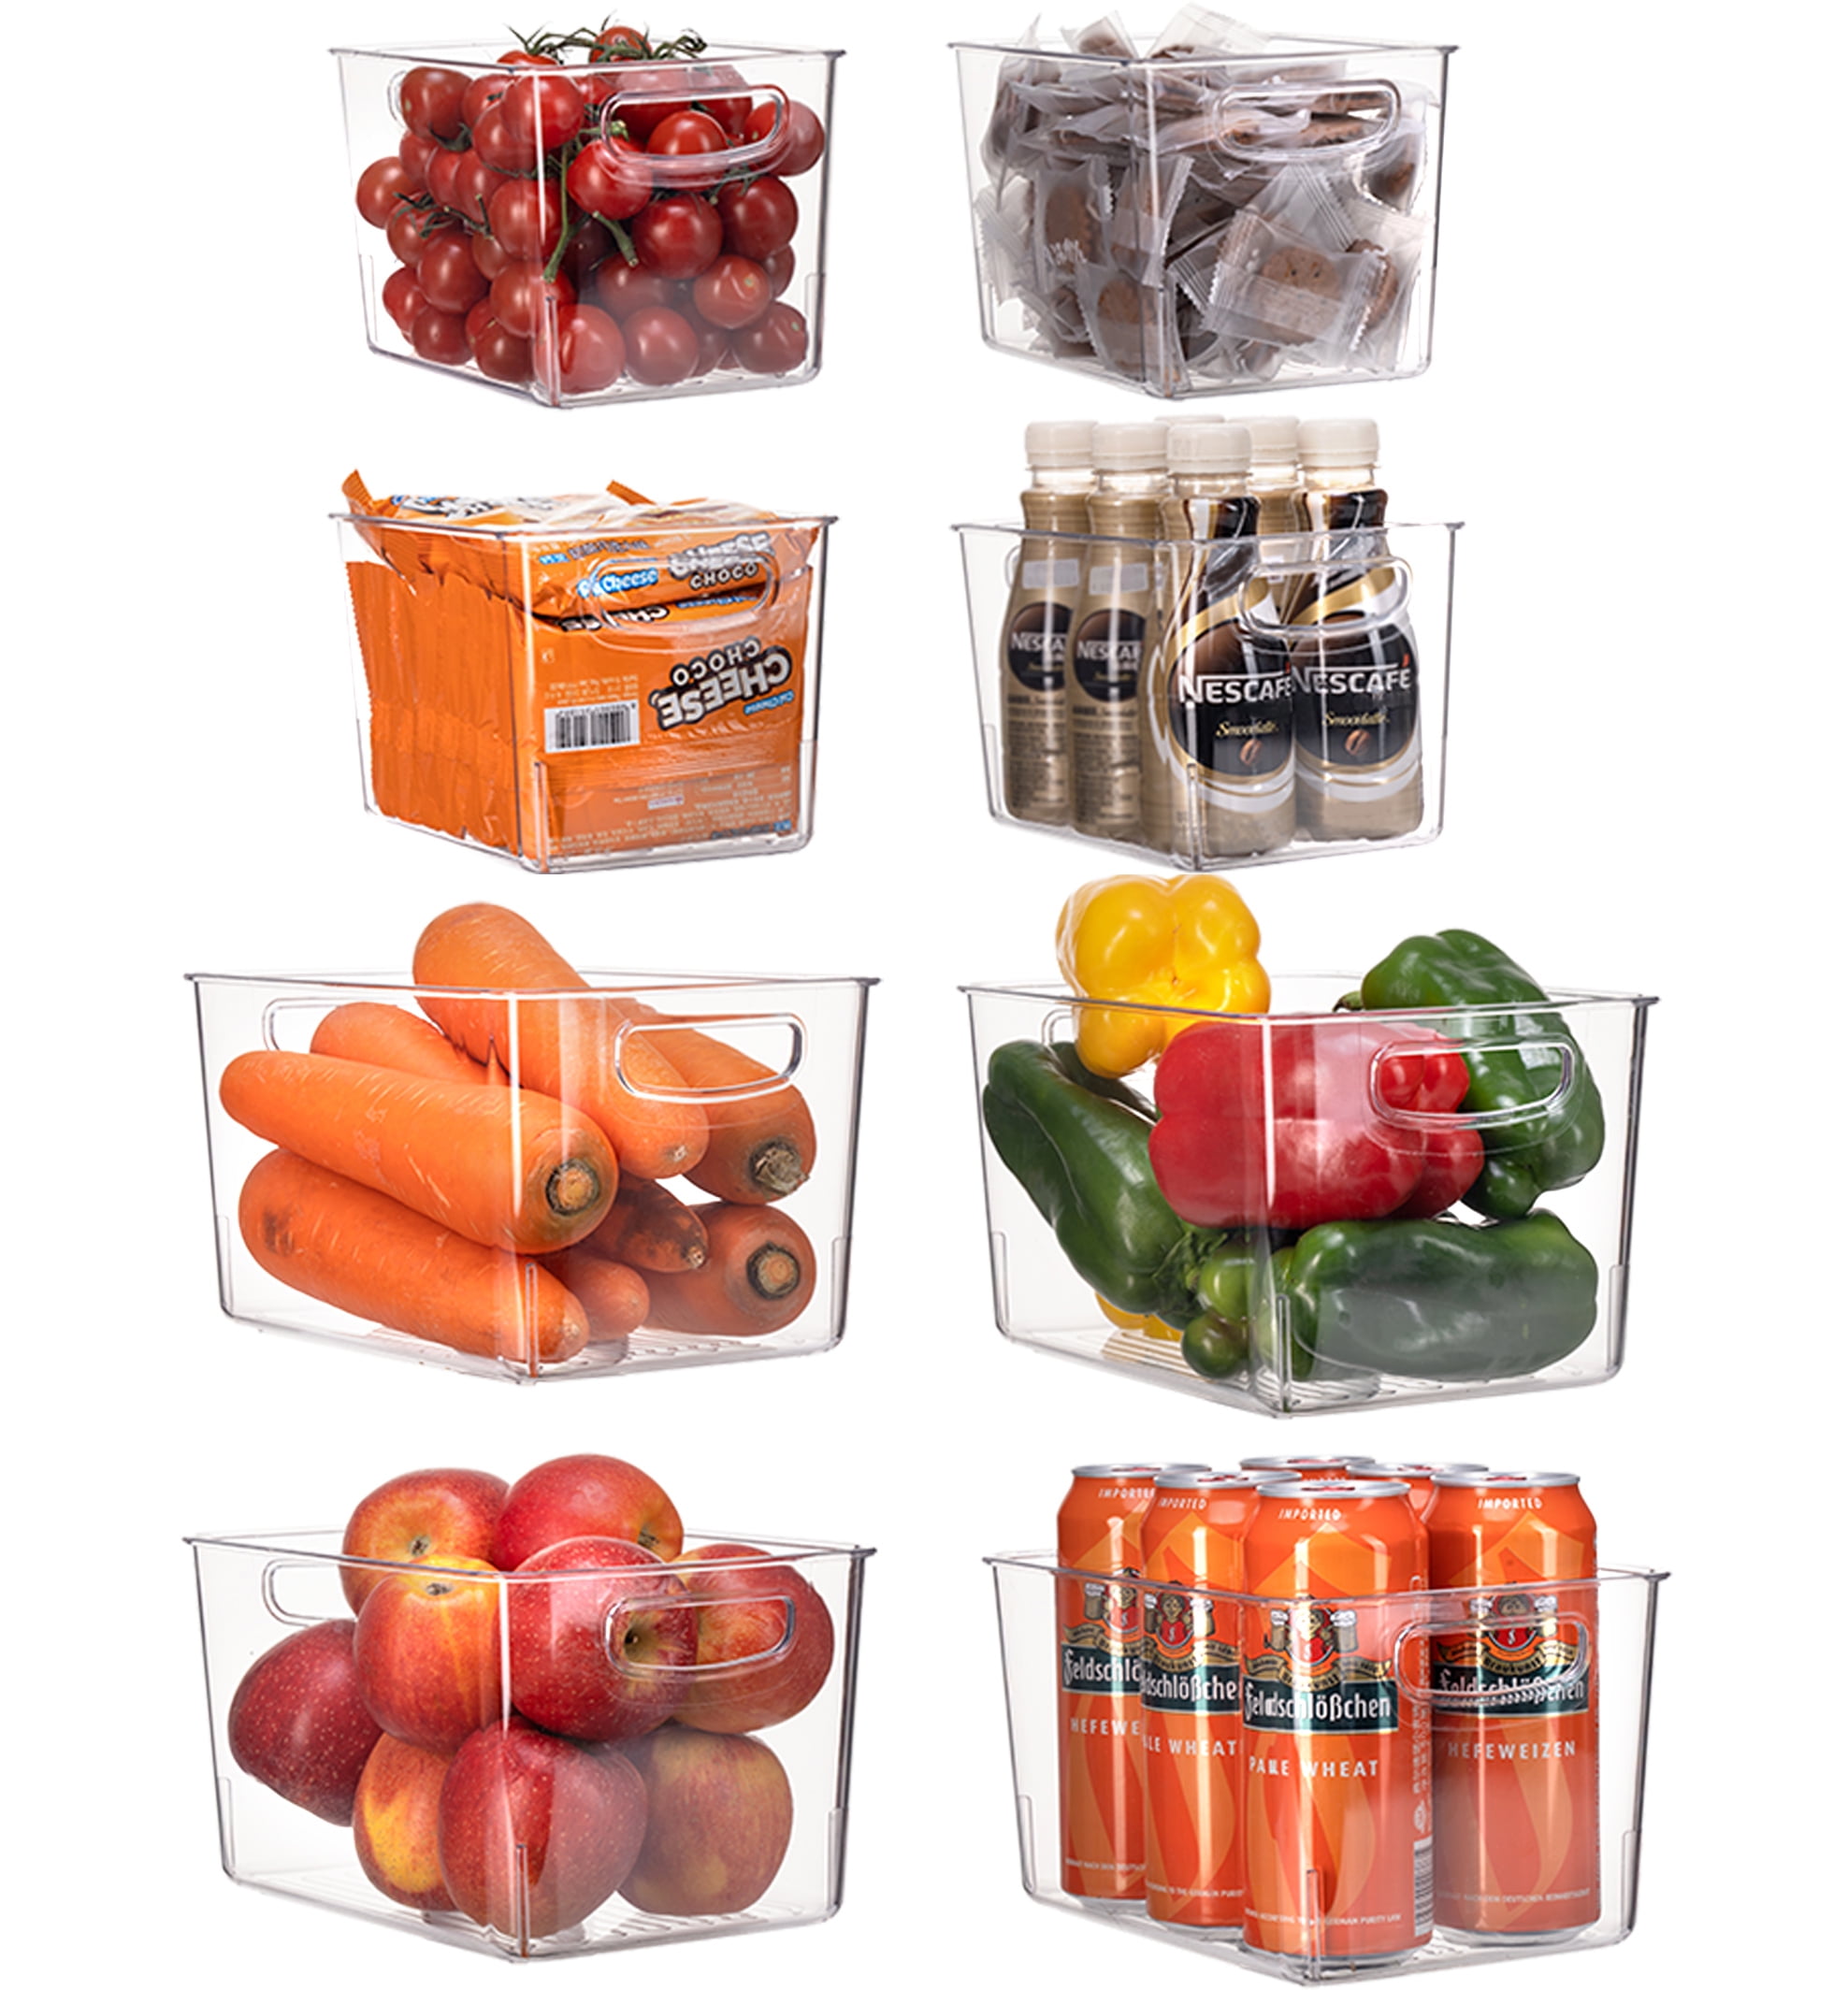 Etienne Alair Fridge Organizer Bins - Set of 16 Clear Bins for  Refrigerator, Freezer, Kitchen Cabinets, Pantry, Storage Or Organization -  Durable